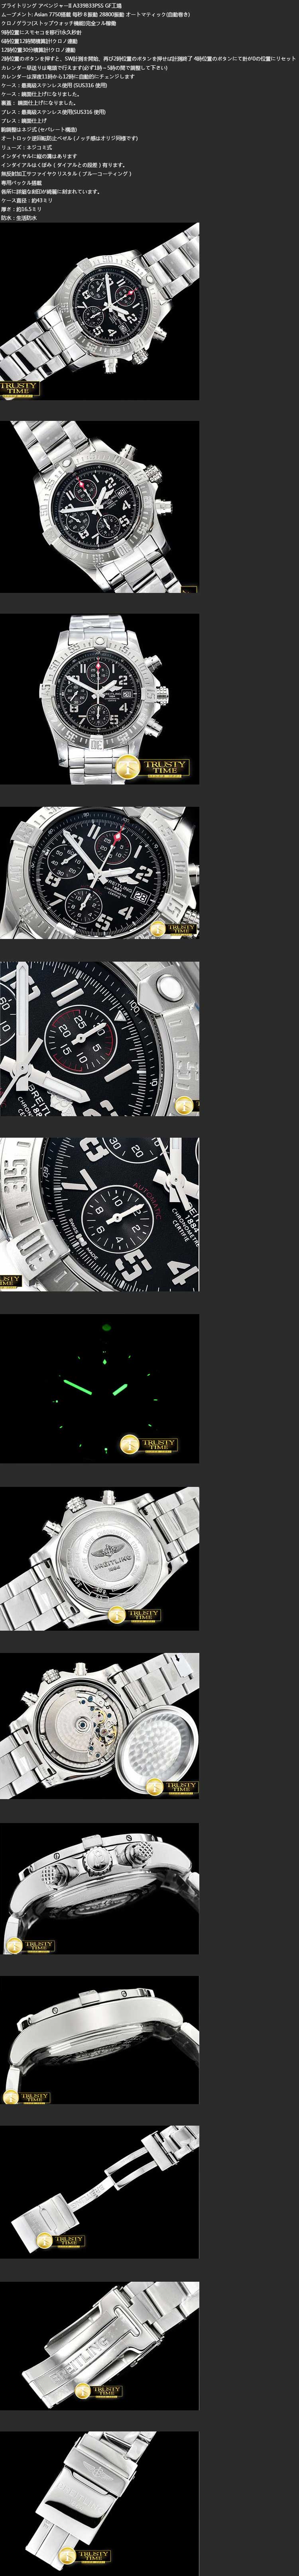 ブライトリング腕時計の説明